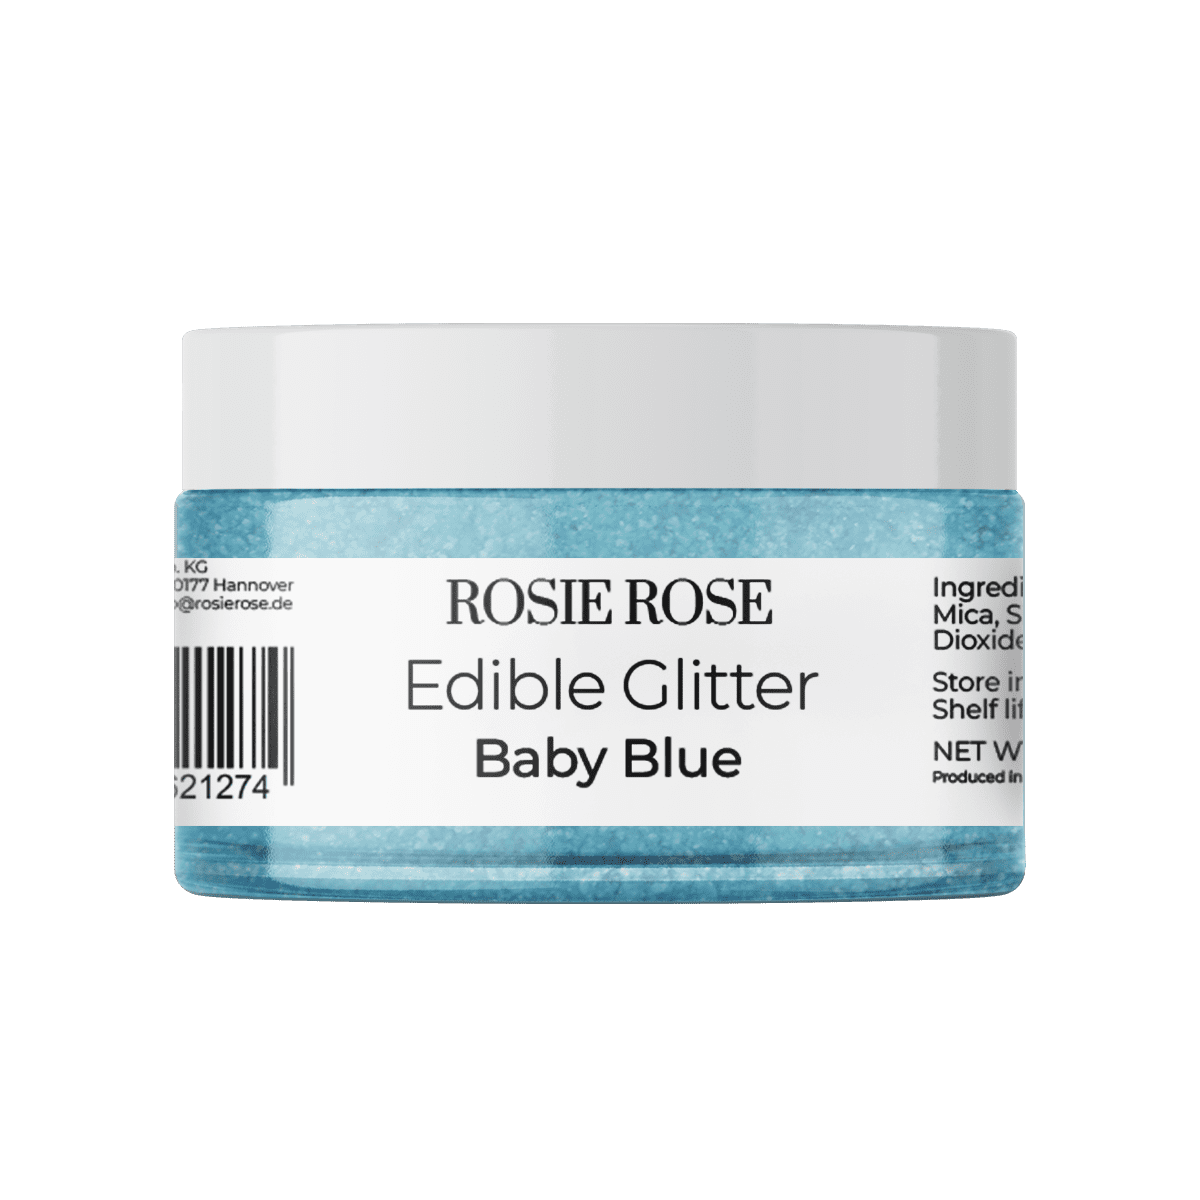 Unser essbares Glitter in Baby Blue ohne E171 bringt Ihre Backwerke zum Strahlen in der Farbe Blau. Verleihen Sie Ihren Desserts einen zauberhaften blauen Touch. Tauchen Sie Ihre Torten und Cupcakes in glitzerndes Blau und verzaubern Sie Ihre Gäste. Entdecken Sie bei ROSIE ROSE eine große Auswahl an essbaren Blumen und Toppings für Ihre Tortendekorationen.